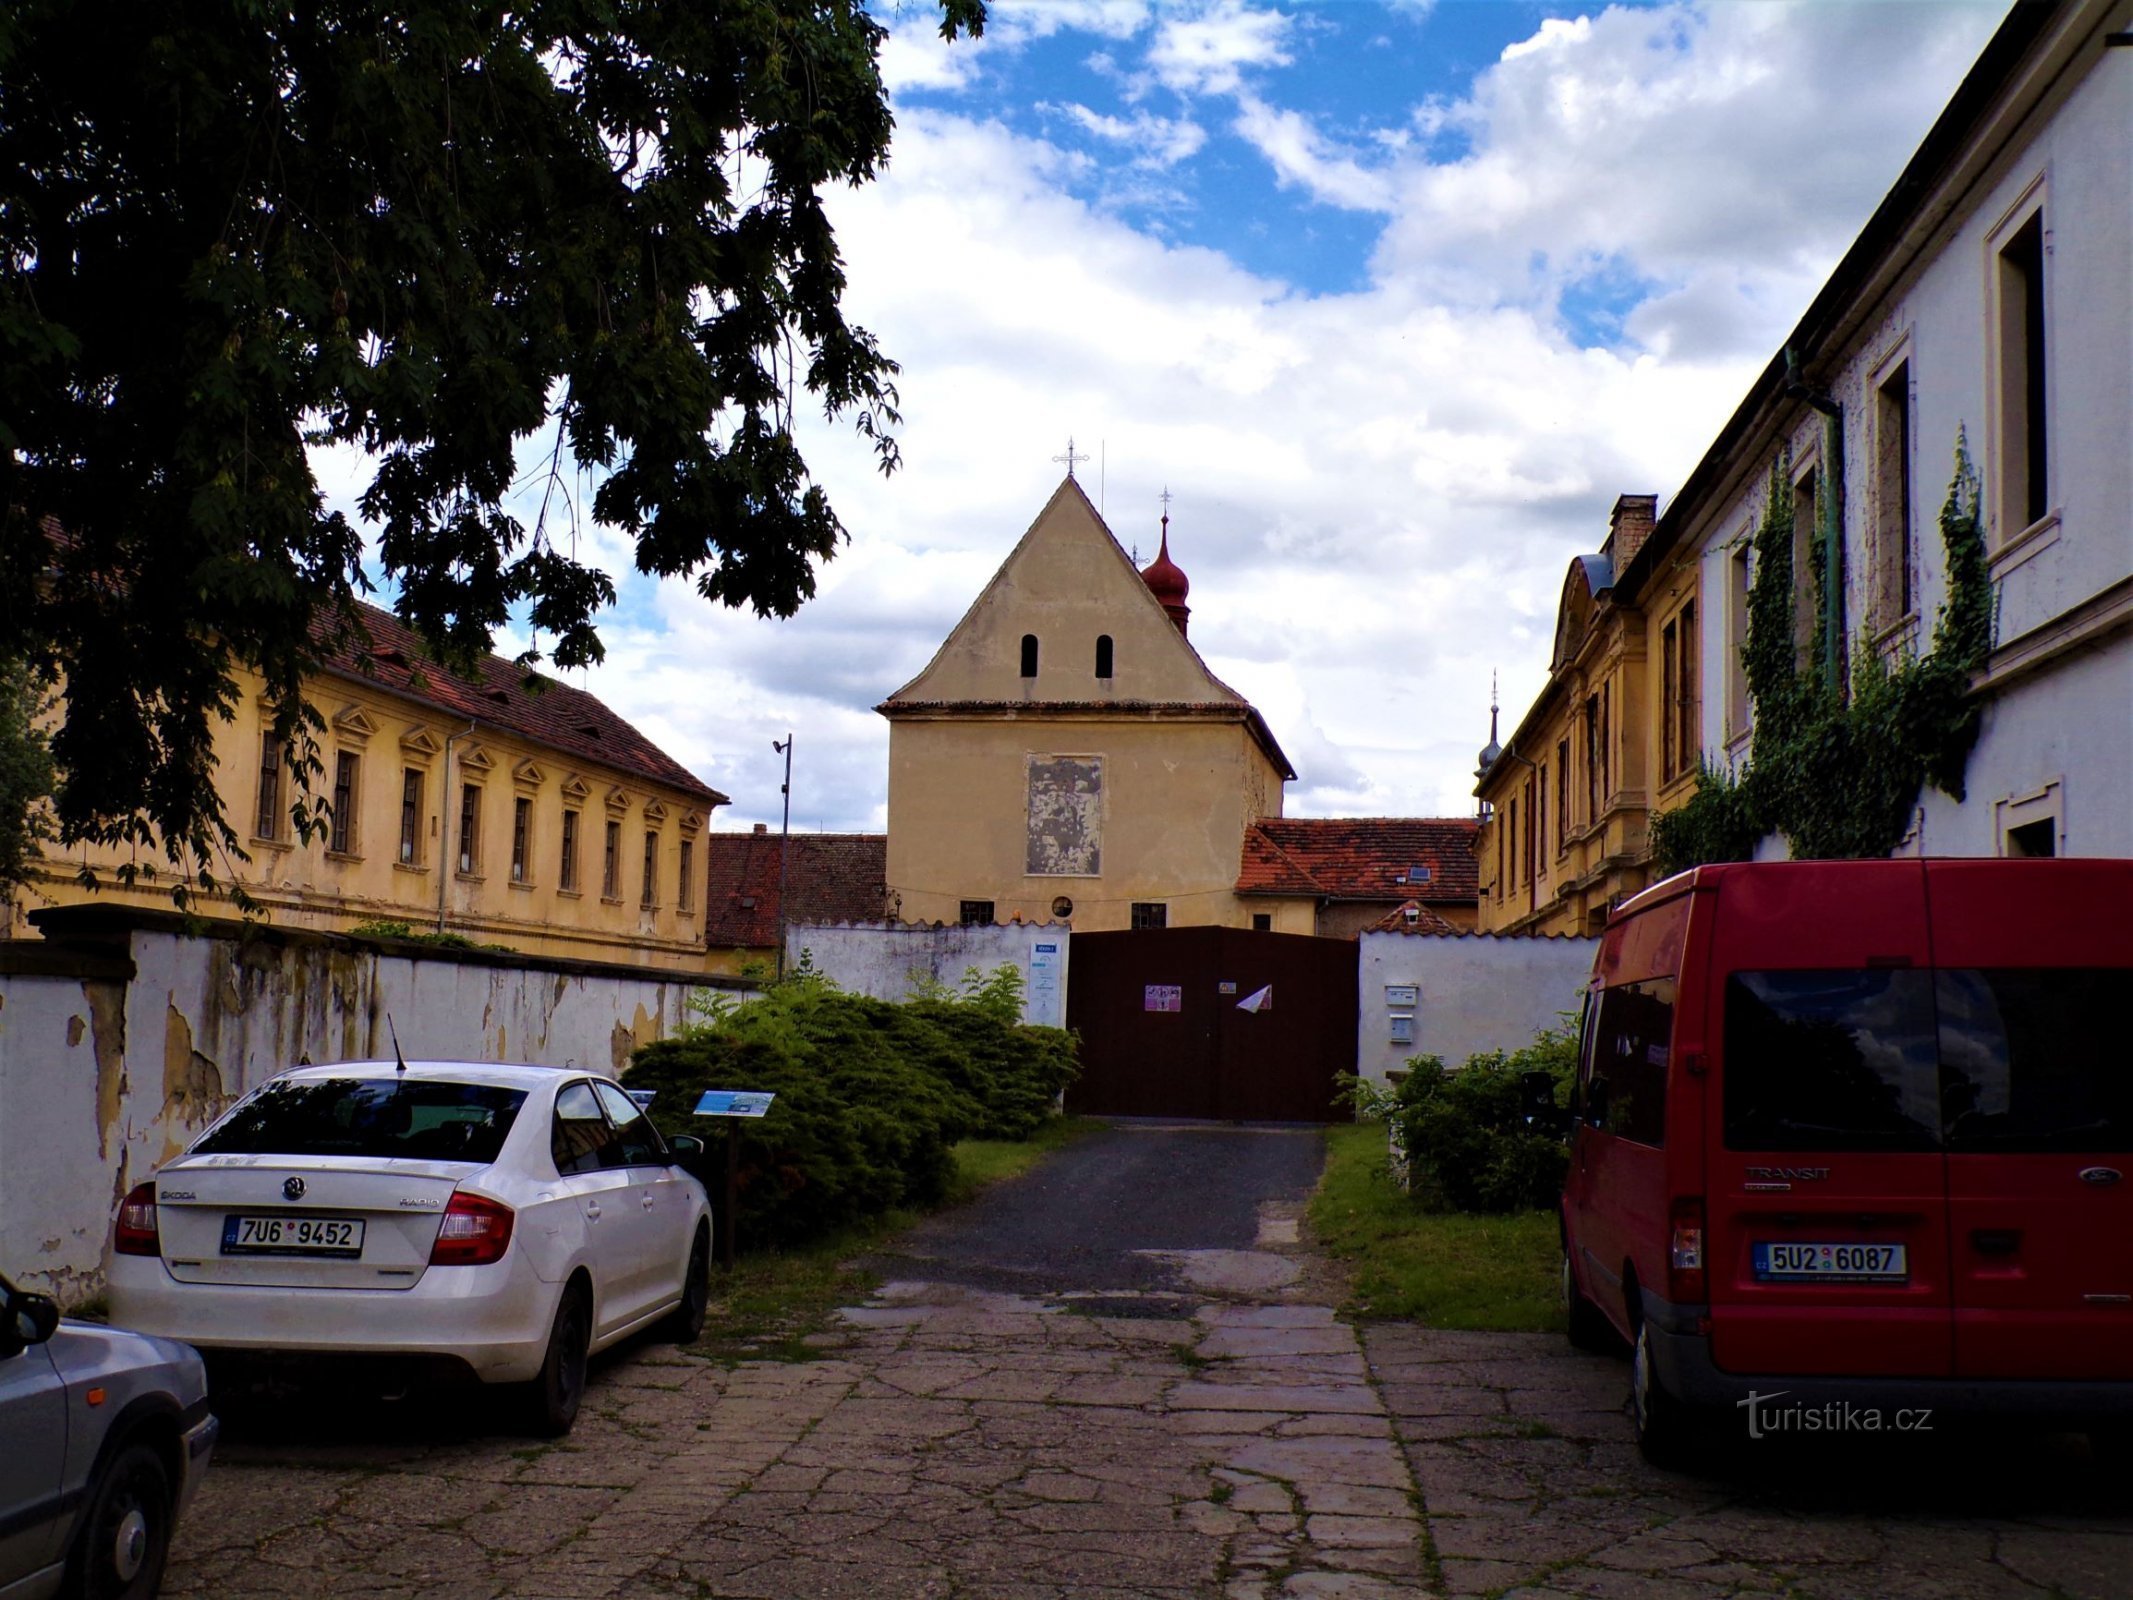 Kościół św. Wacława z częścią dawnego klasztoru kapucynów (Roudnice nad Labem, 9.7.2021 lipca XNUMX)